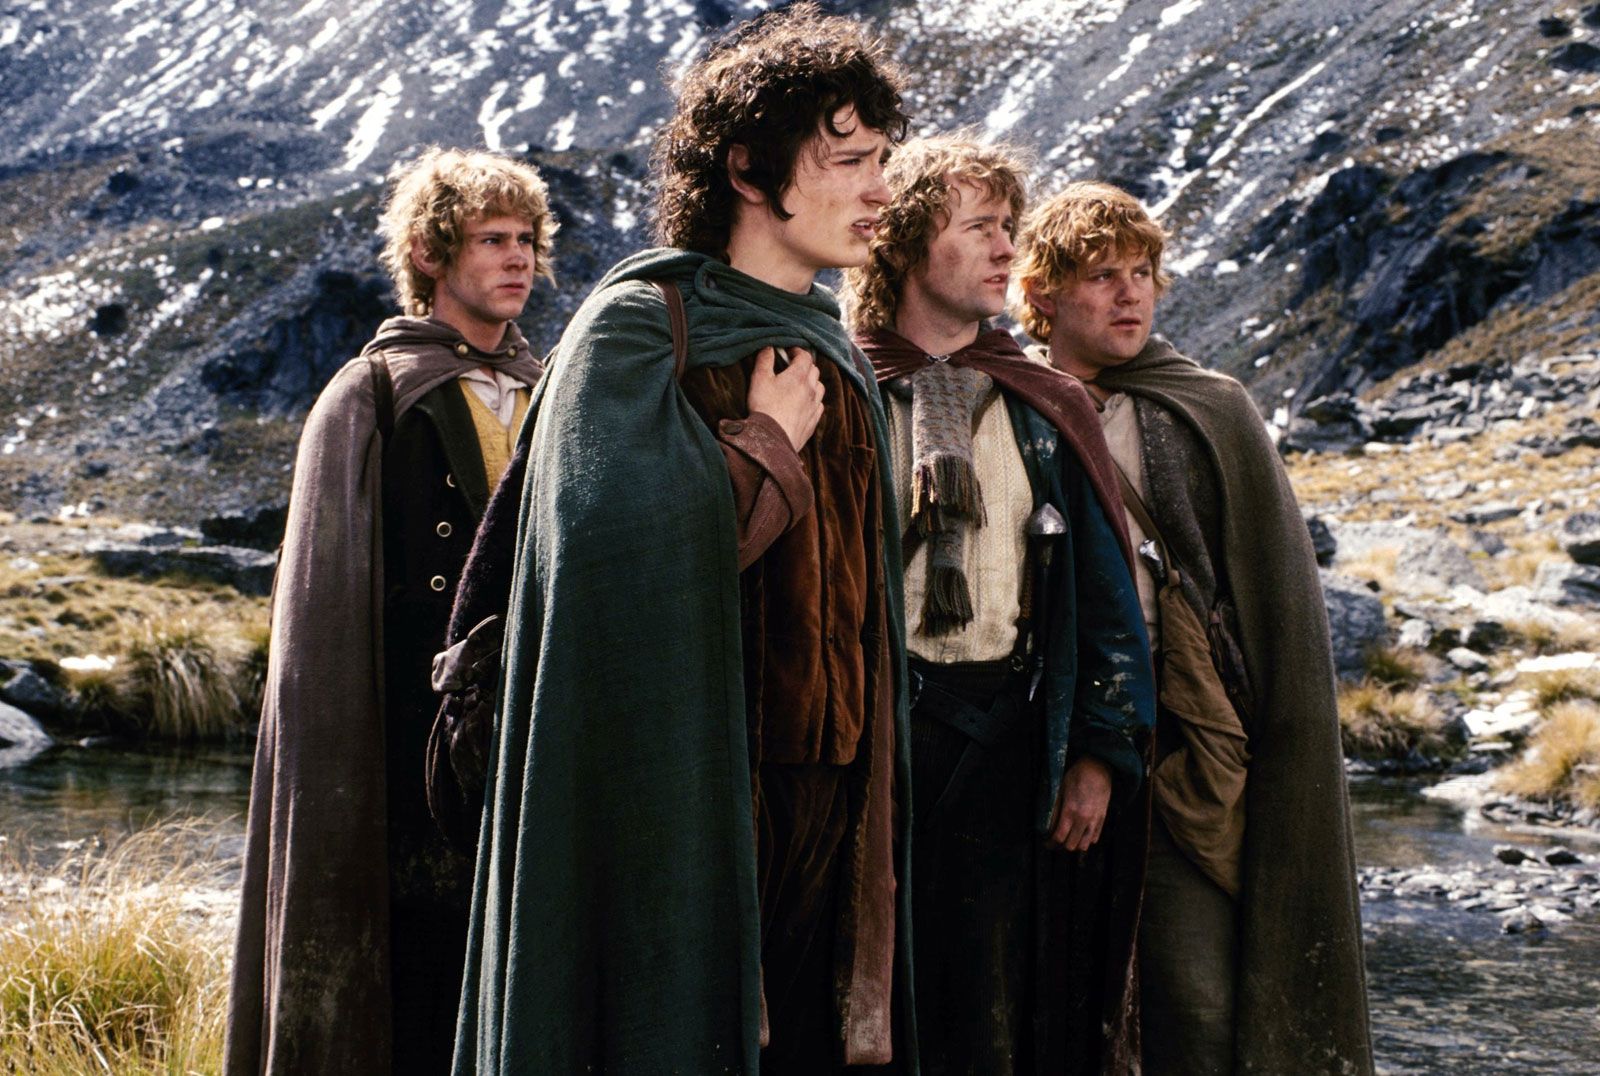 Frodo, Merry, Pippin and Sam follow Aragorn